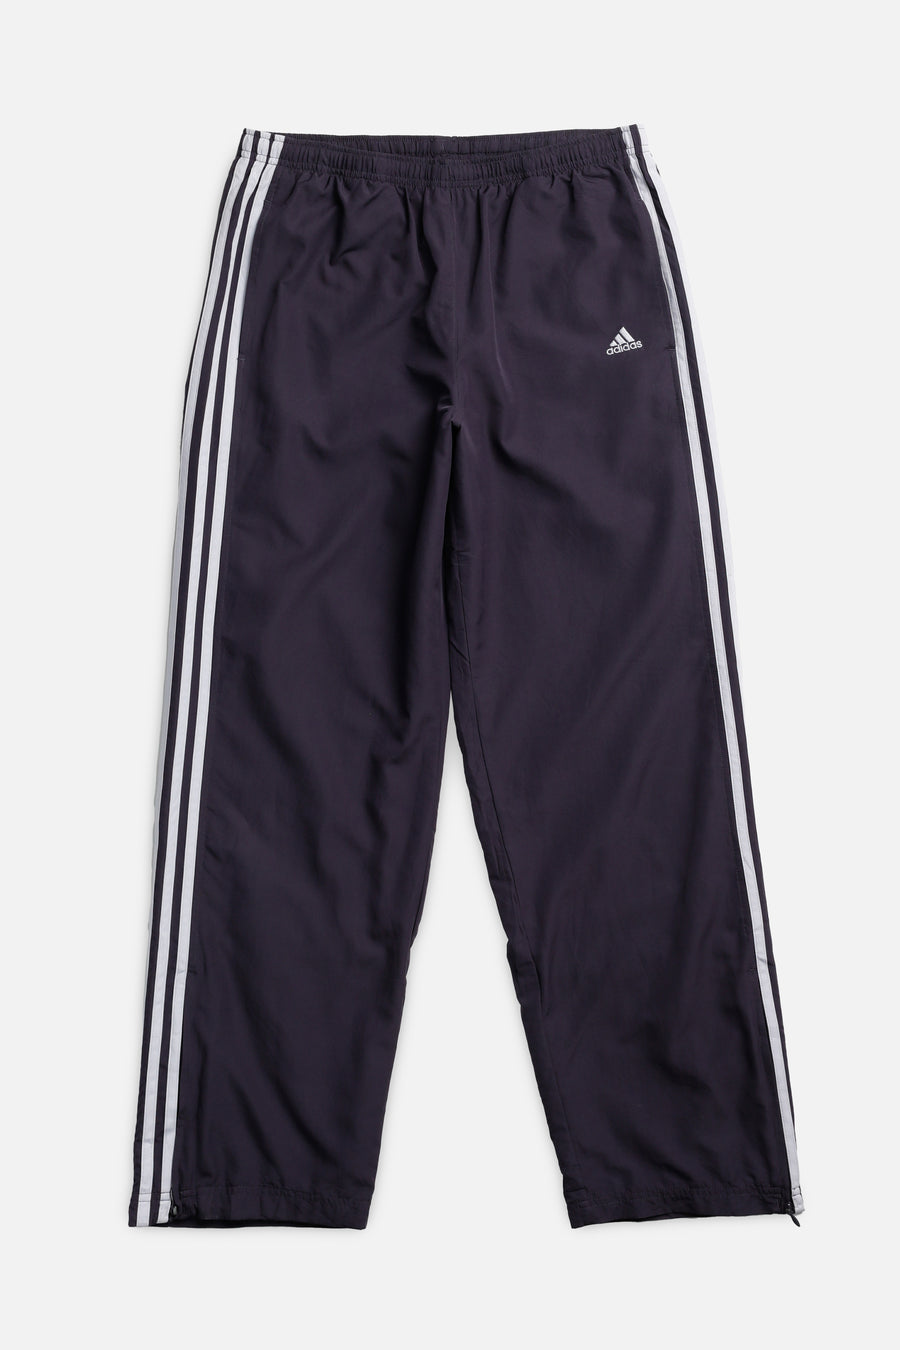 Vintage Adidas Windbreaker Pants - M